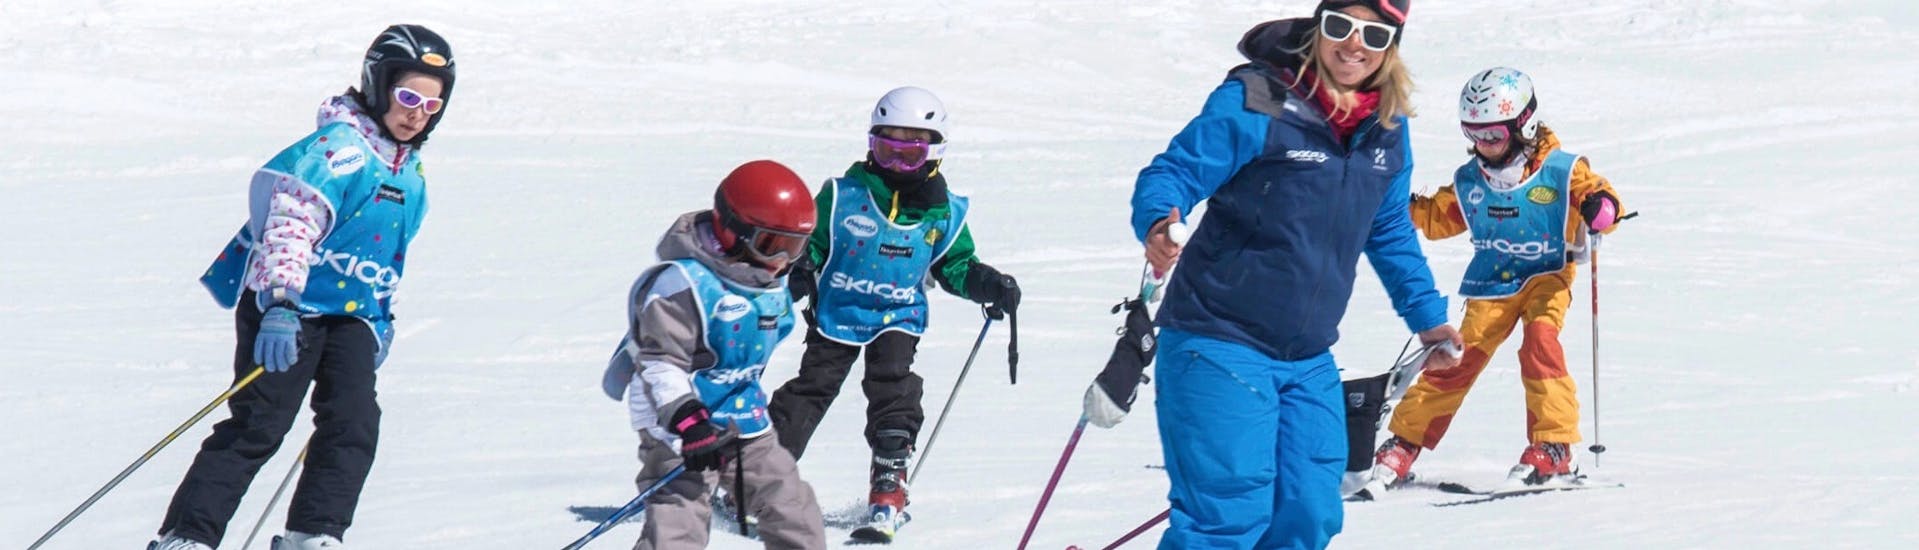 Kinderen skiën van een helling tijdens hun Kinderskilessen (5-12 jaar) - Cool 5 Kids met Ski Cool Val Thorens.